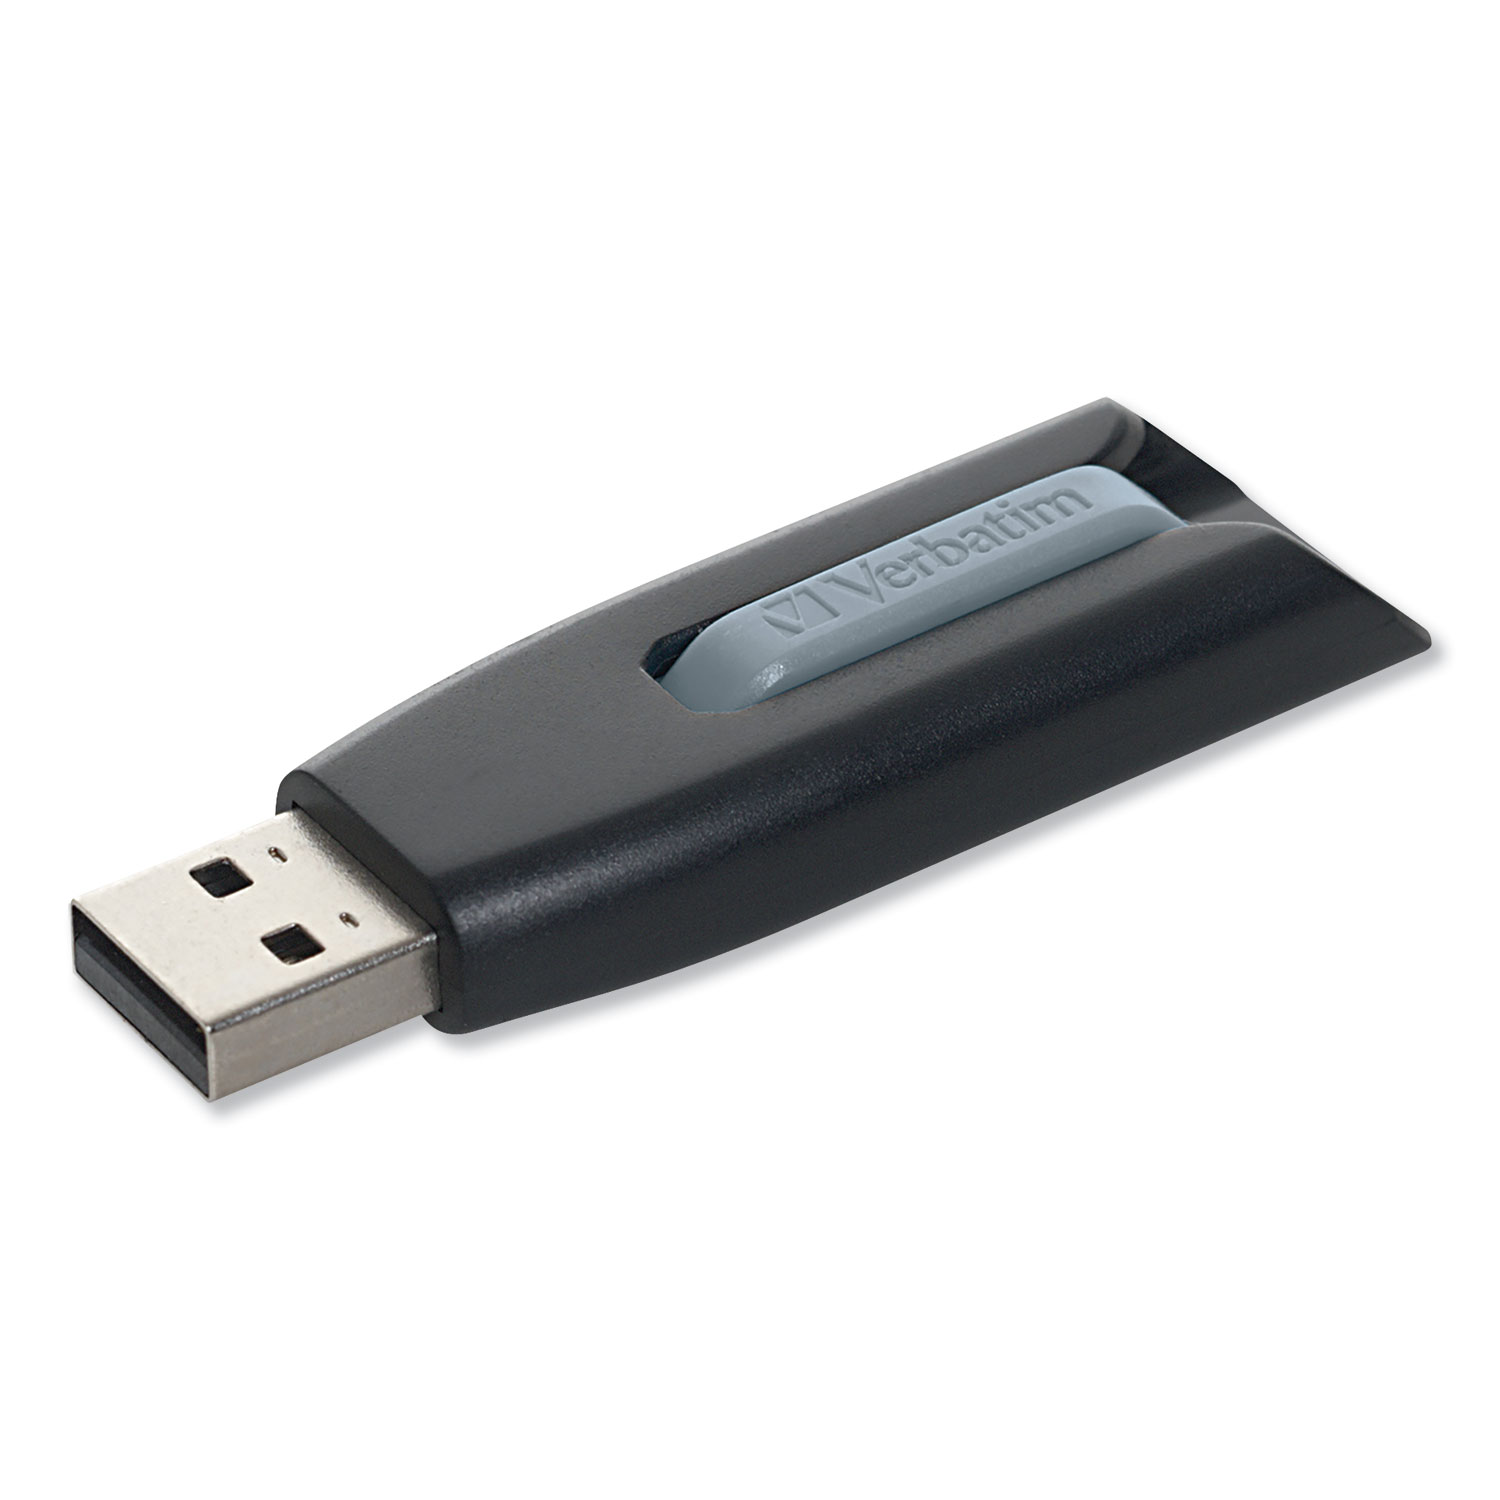  Verbatim 49171 Store 'n' Go V3 USB 3.0 Drive, 8 GB, Black/Gray (VER49171) 